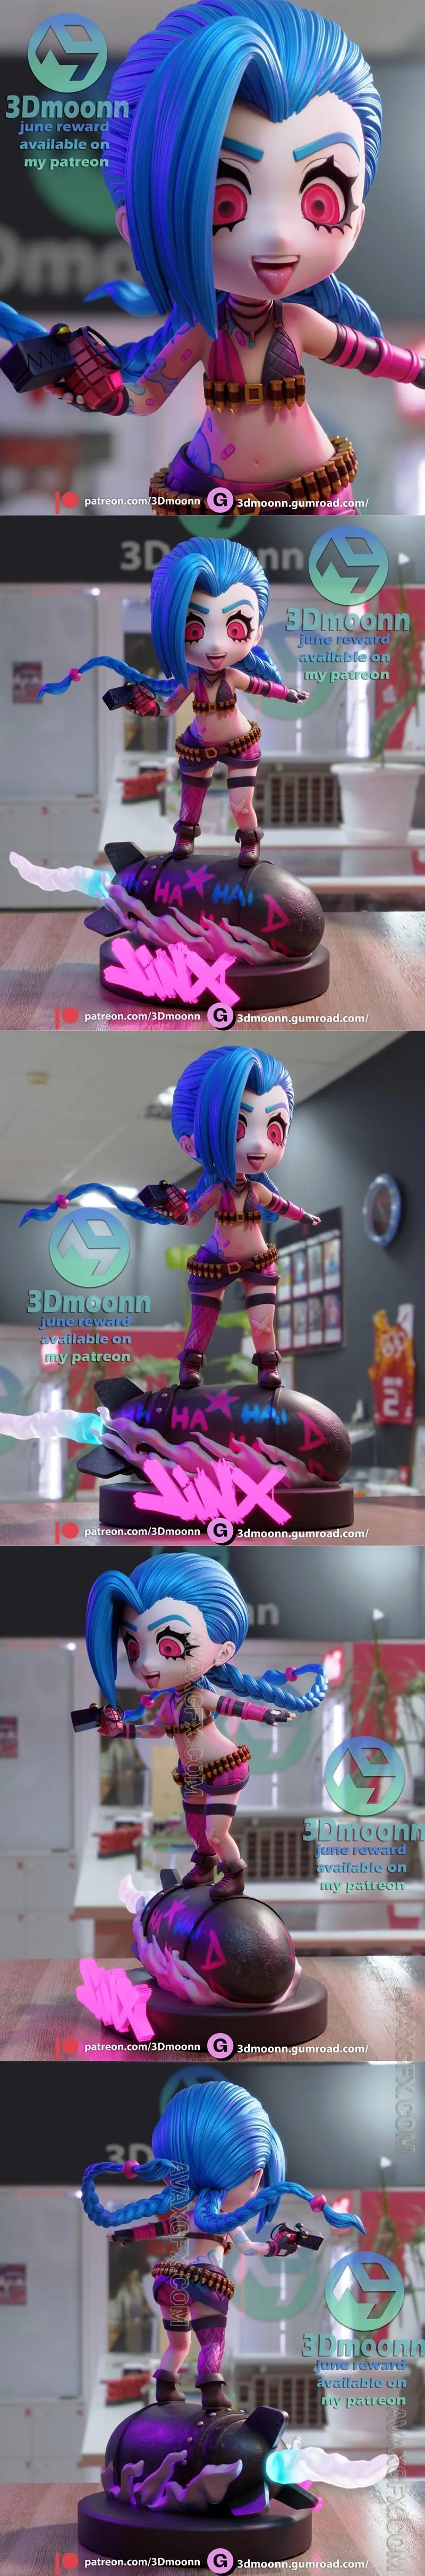 3Dmoonn - Jinx Chibi - STL 3D Model